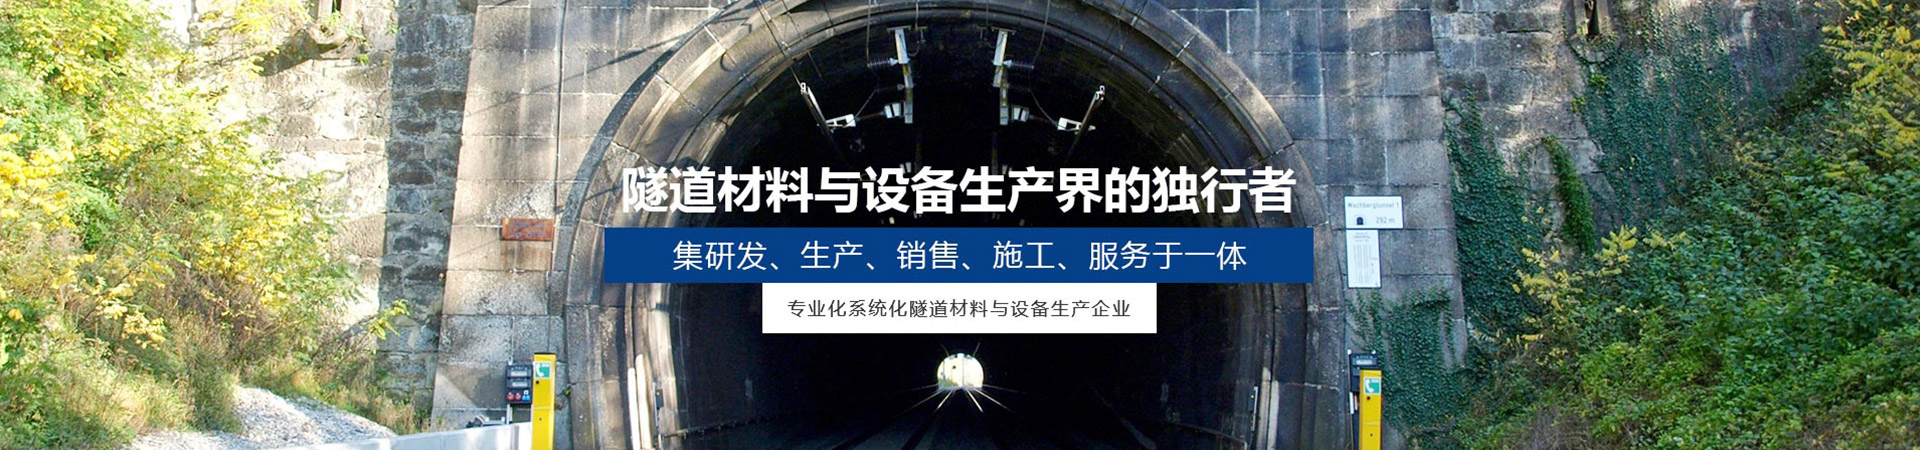 广汉隧道台车哪家好_德阳建筑项目合作施工-四川皓德斯新材料科技有限公司官网